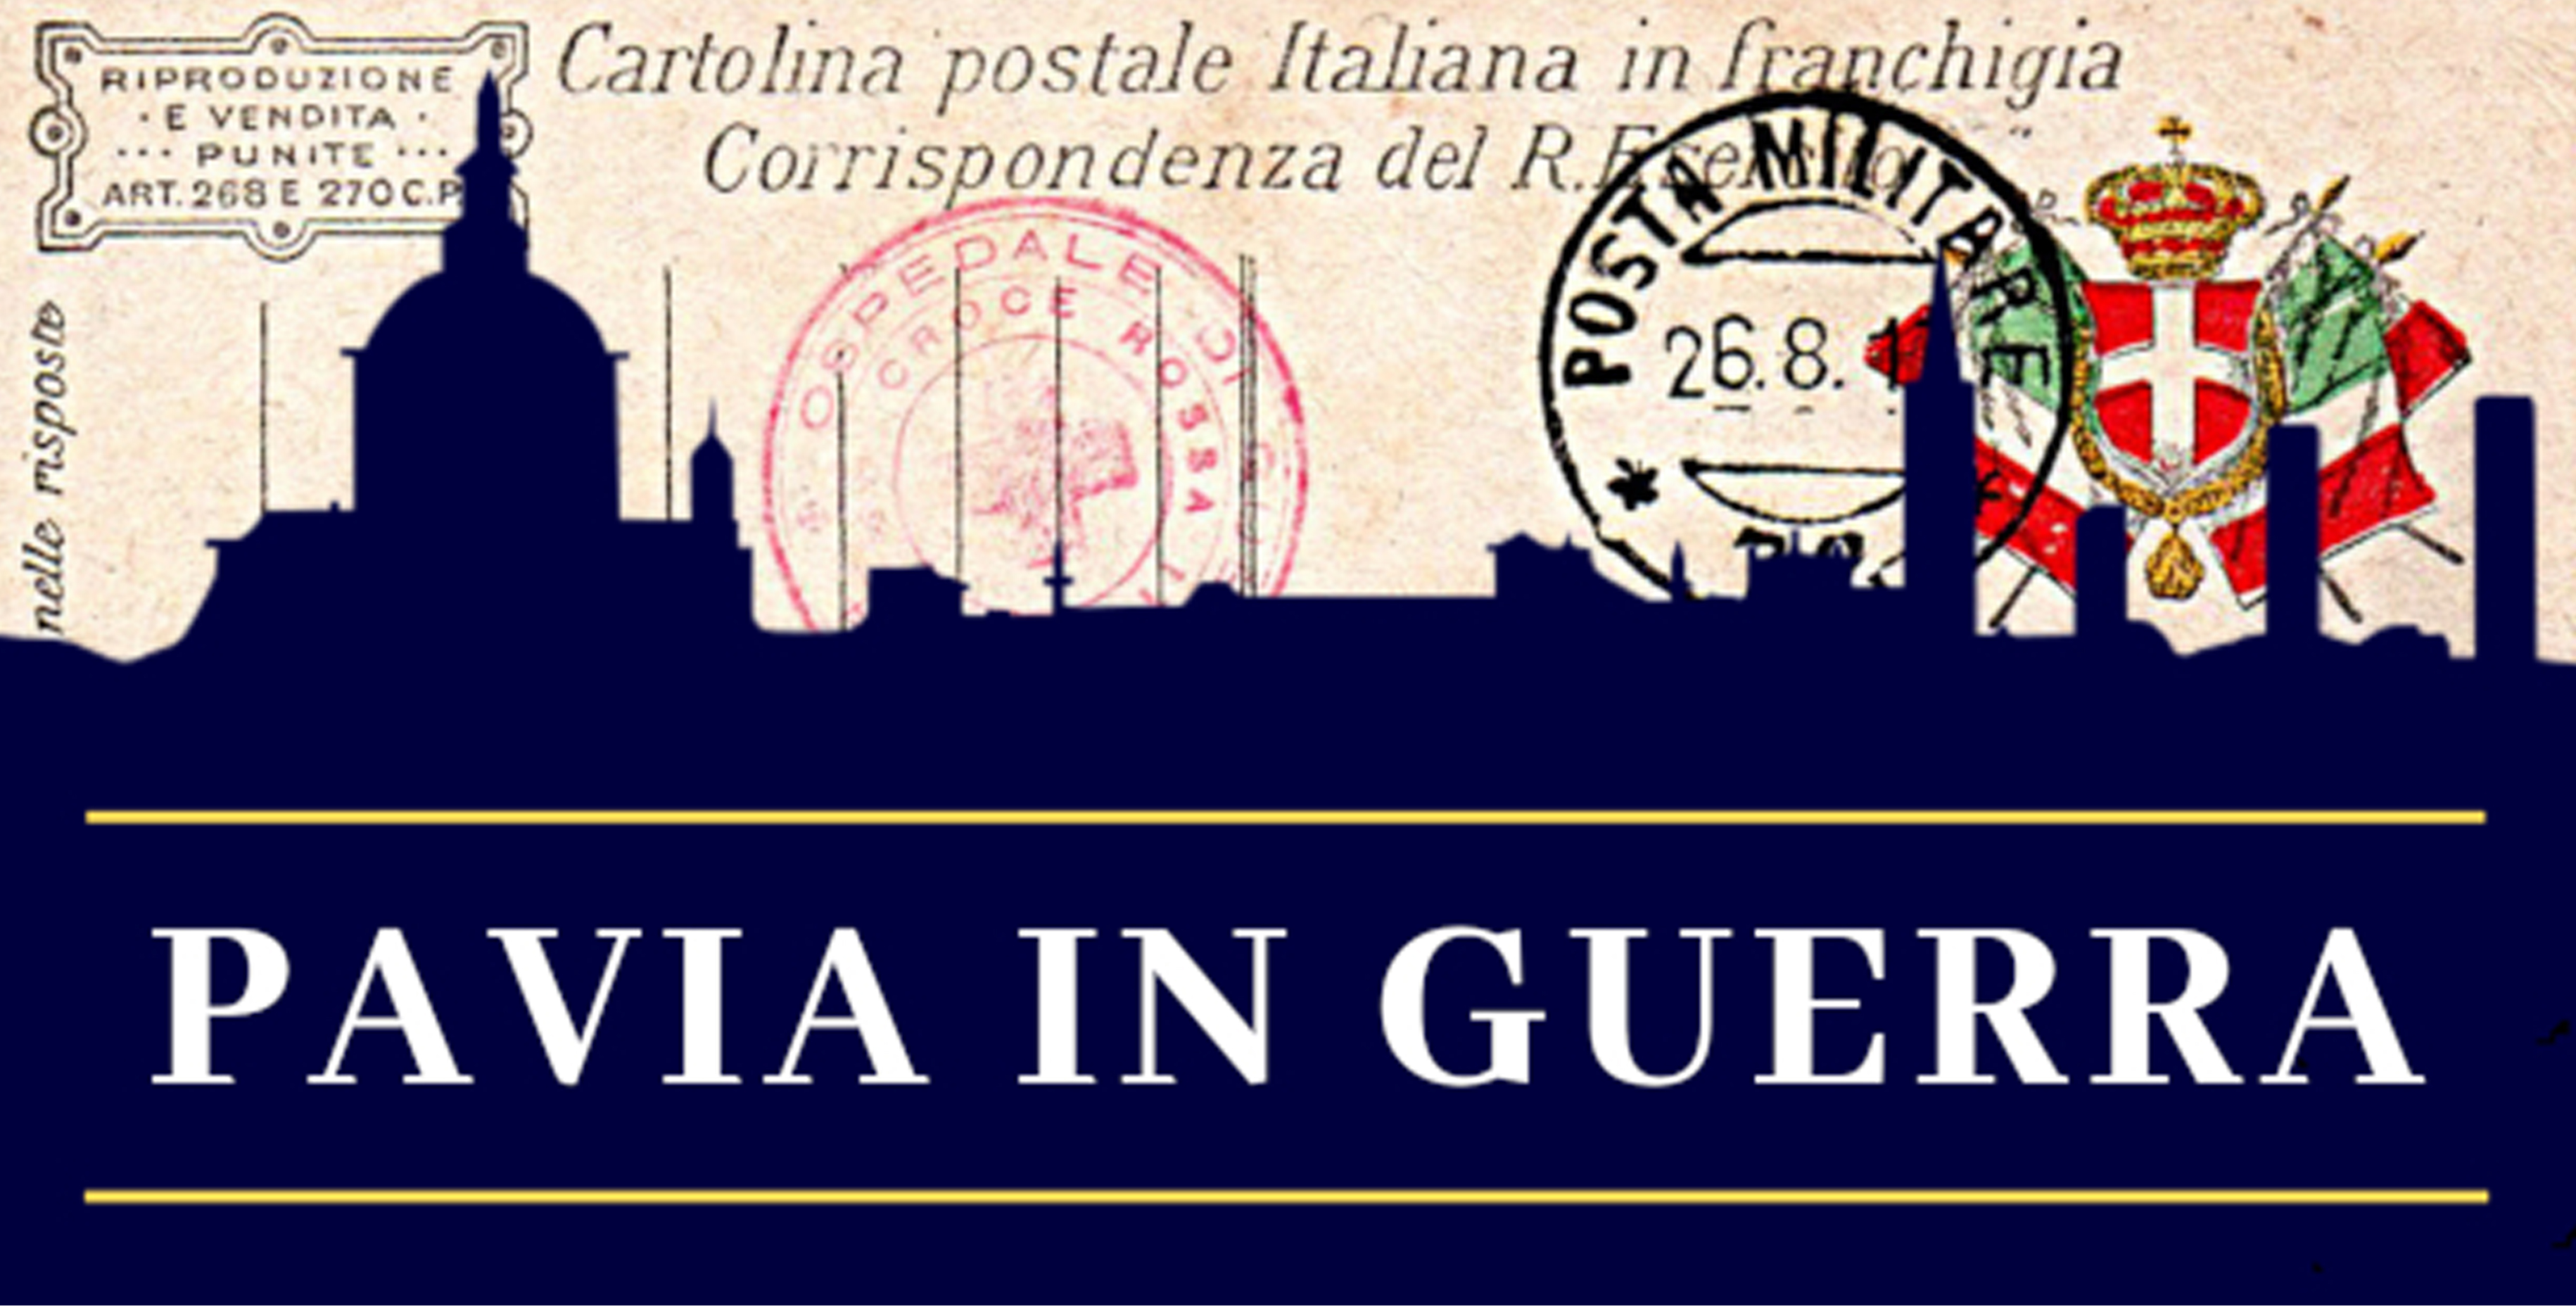 Una cartolina  dell' epoca con lo skyline di Pavia in ombra e testo descrittivo